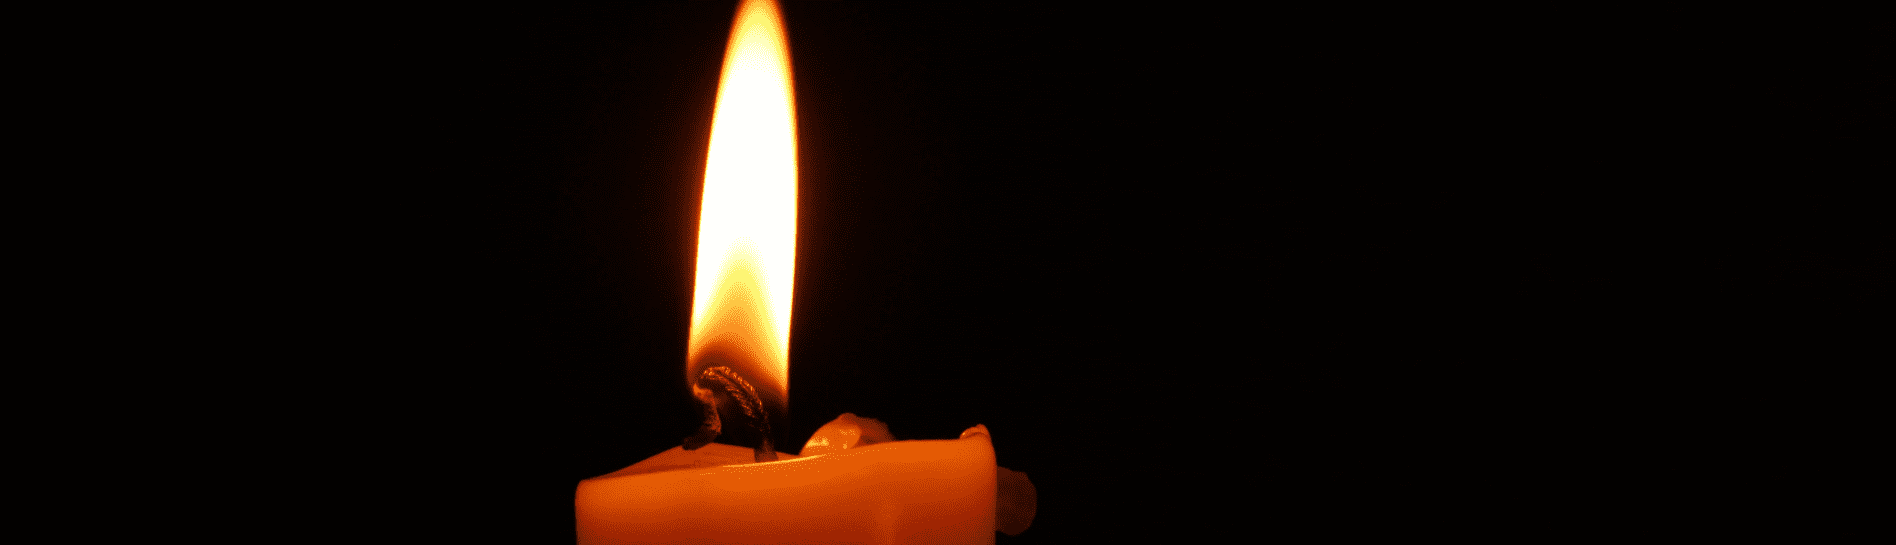 encender velas a los difuntos en la casa